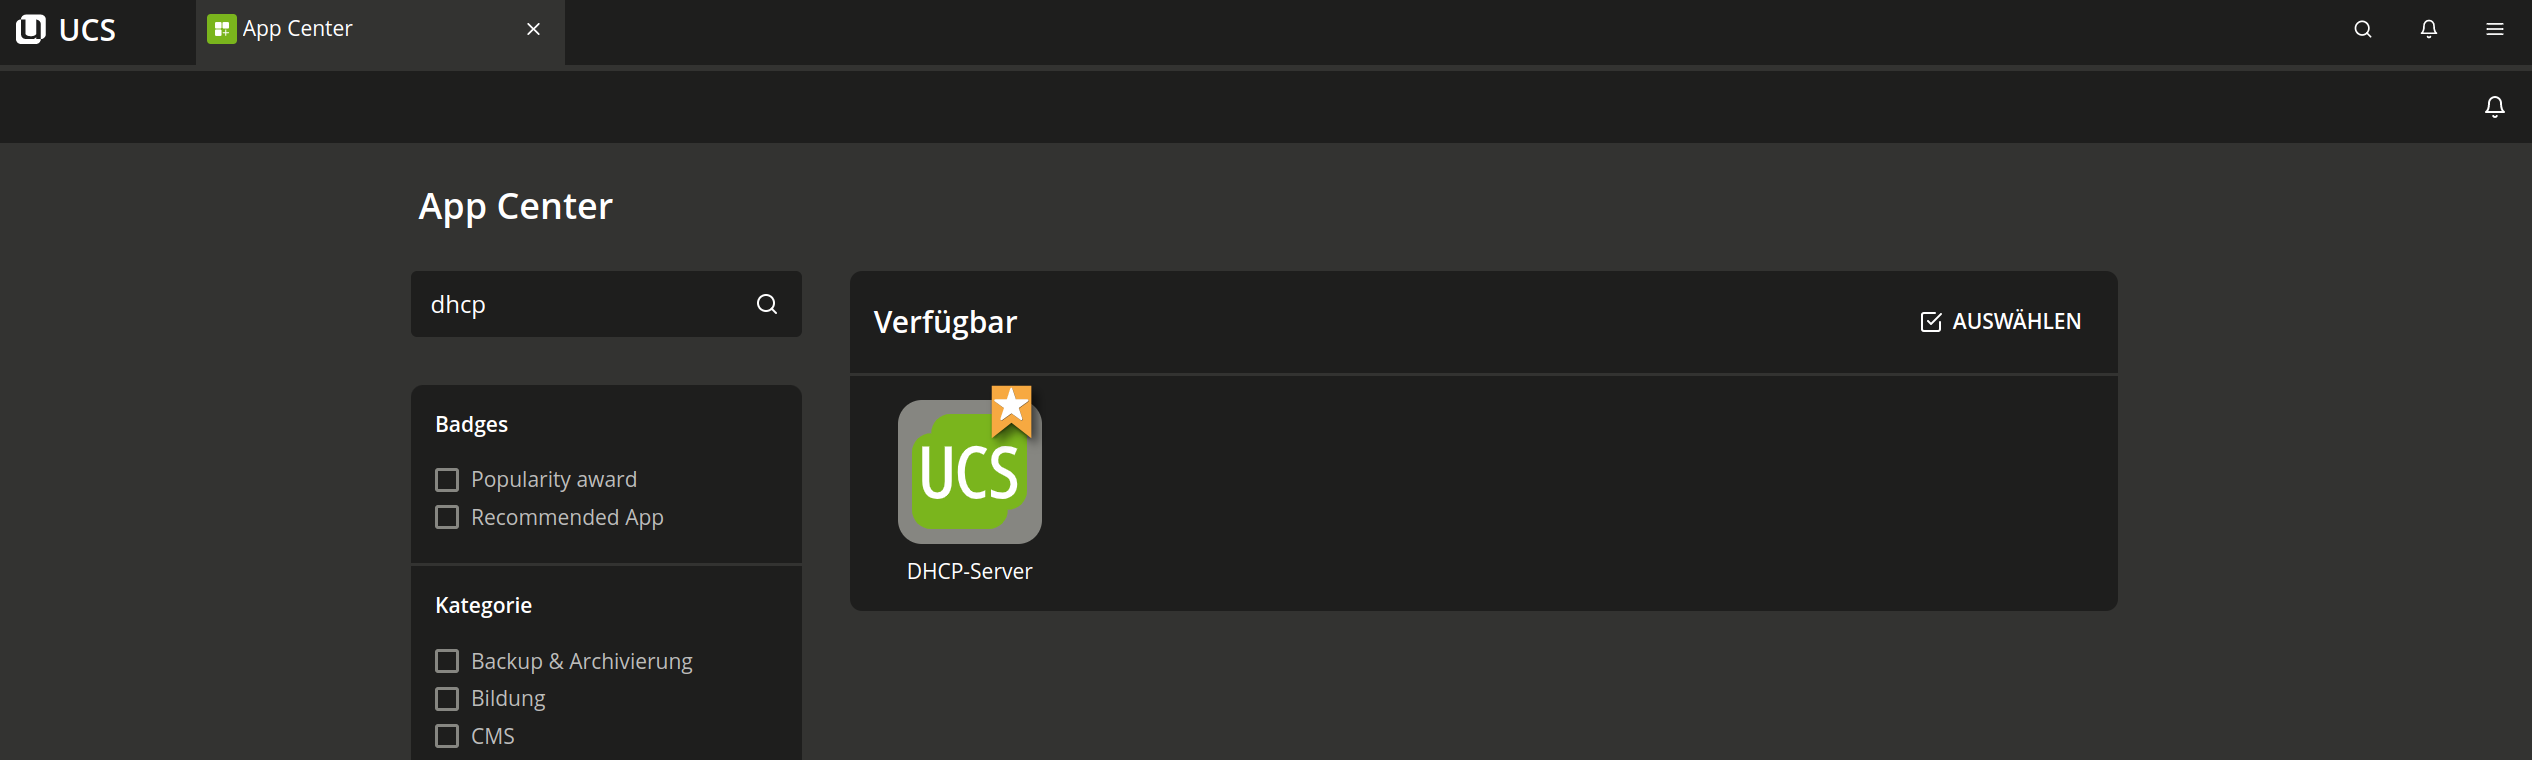 DHCP im App Center